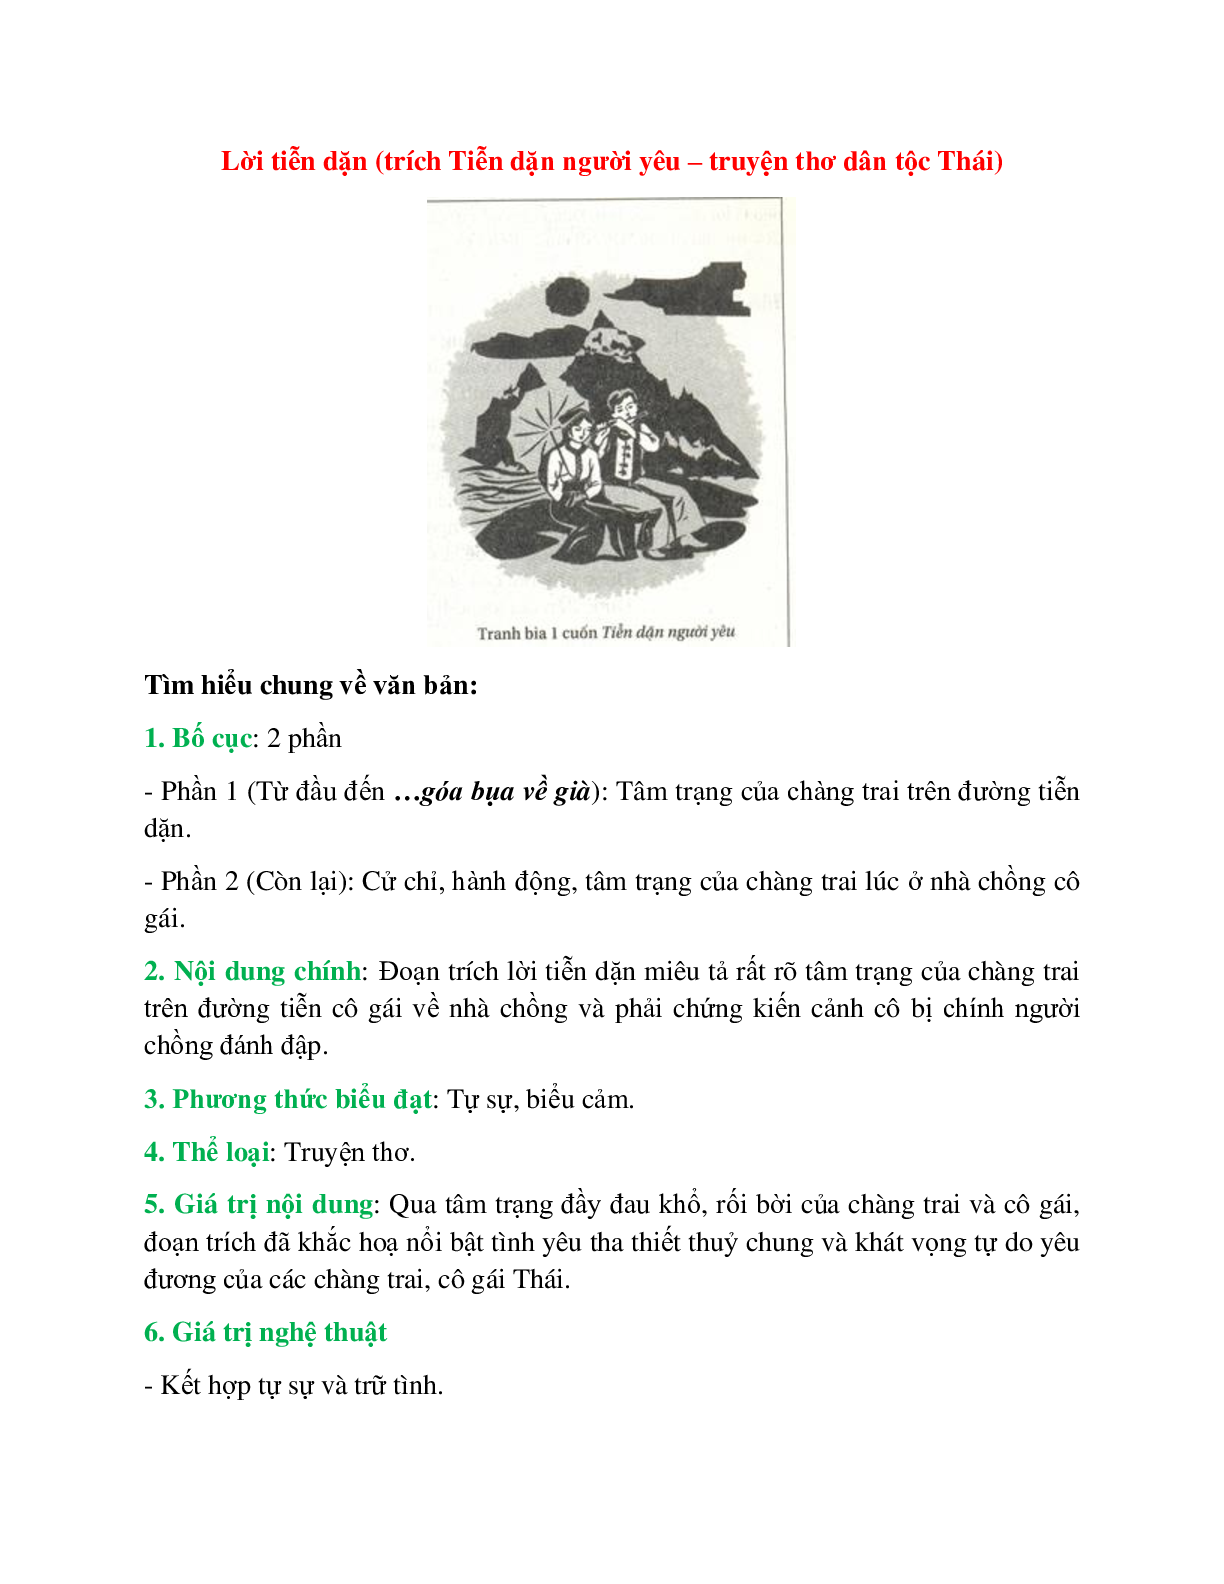 Lời tiễn dặn (trích Tiễn dặn người yêu – truyện thơ dân tộc Thái) – Ngữ văn lớp 10 (trang 1)